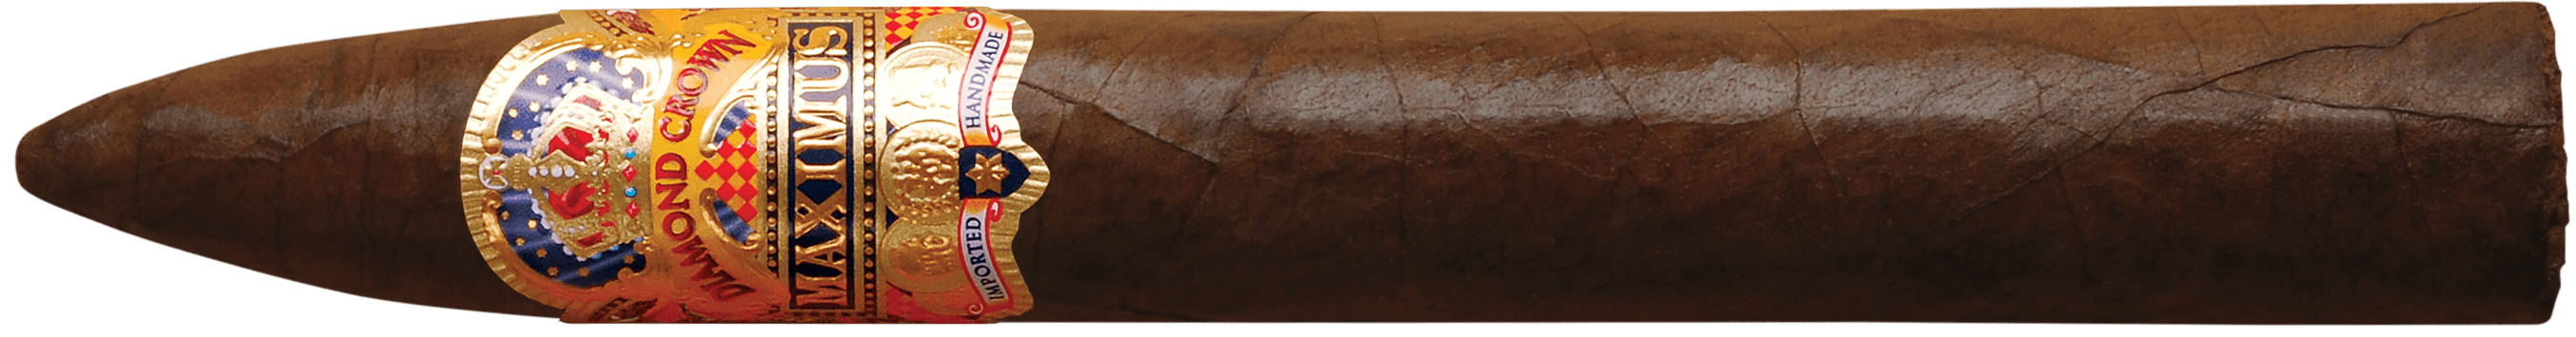 Diamond Crown Maximus Cigar No. 3 Single